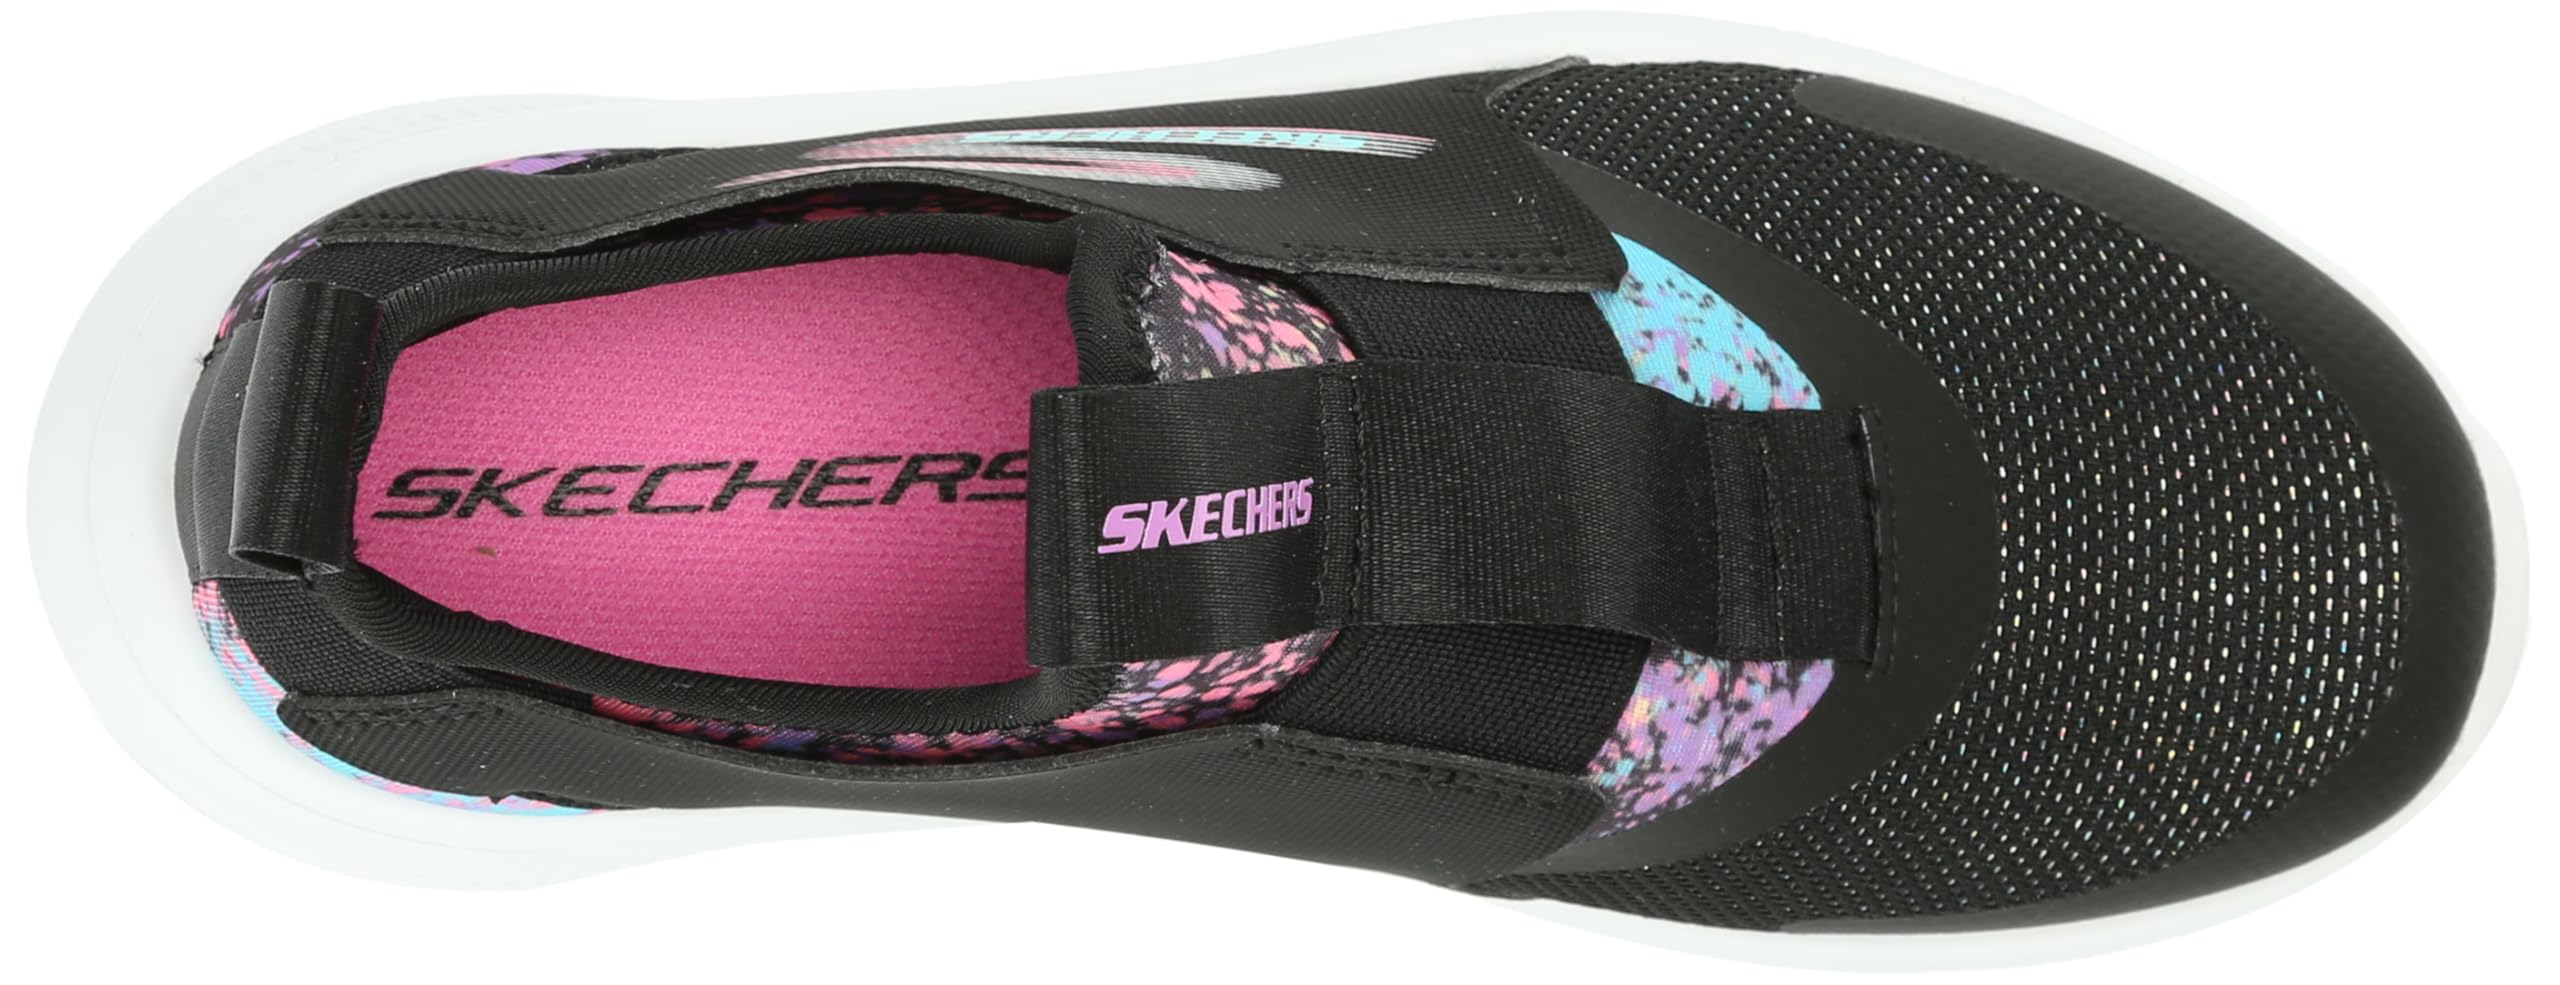 Skechers Unisex-Child Skech Fast 2.0 Sneaker